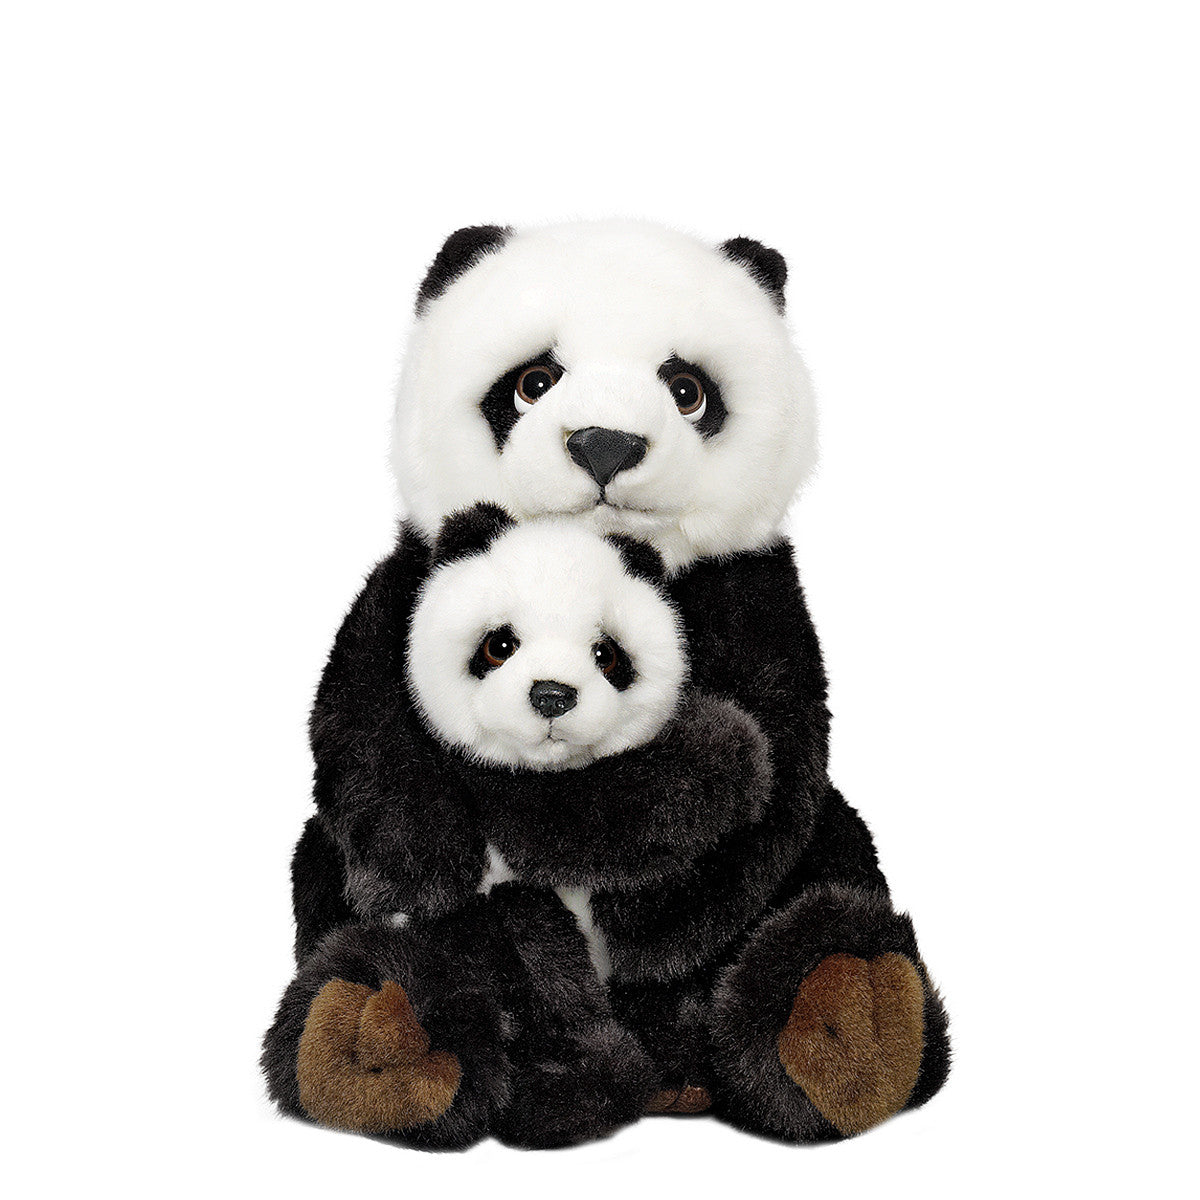 Famille de pandas géants - WWF-Canada